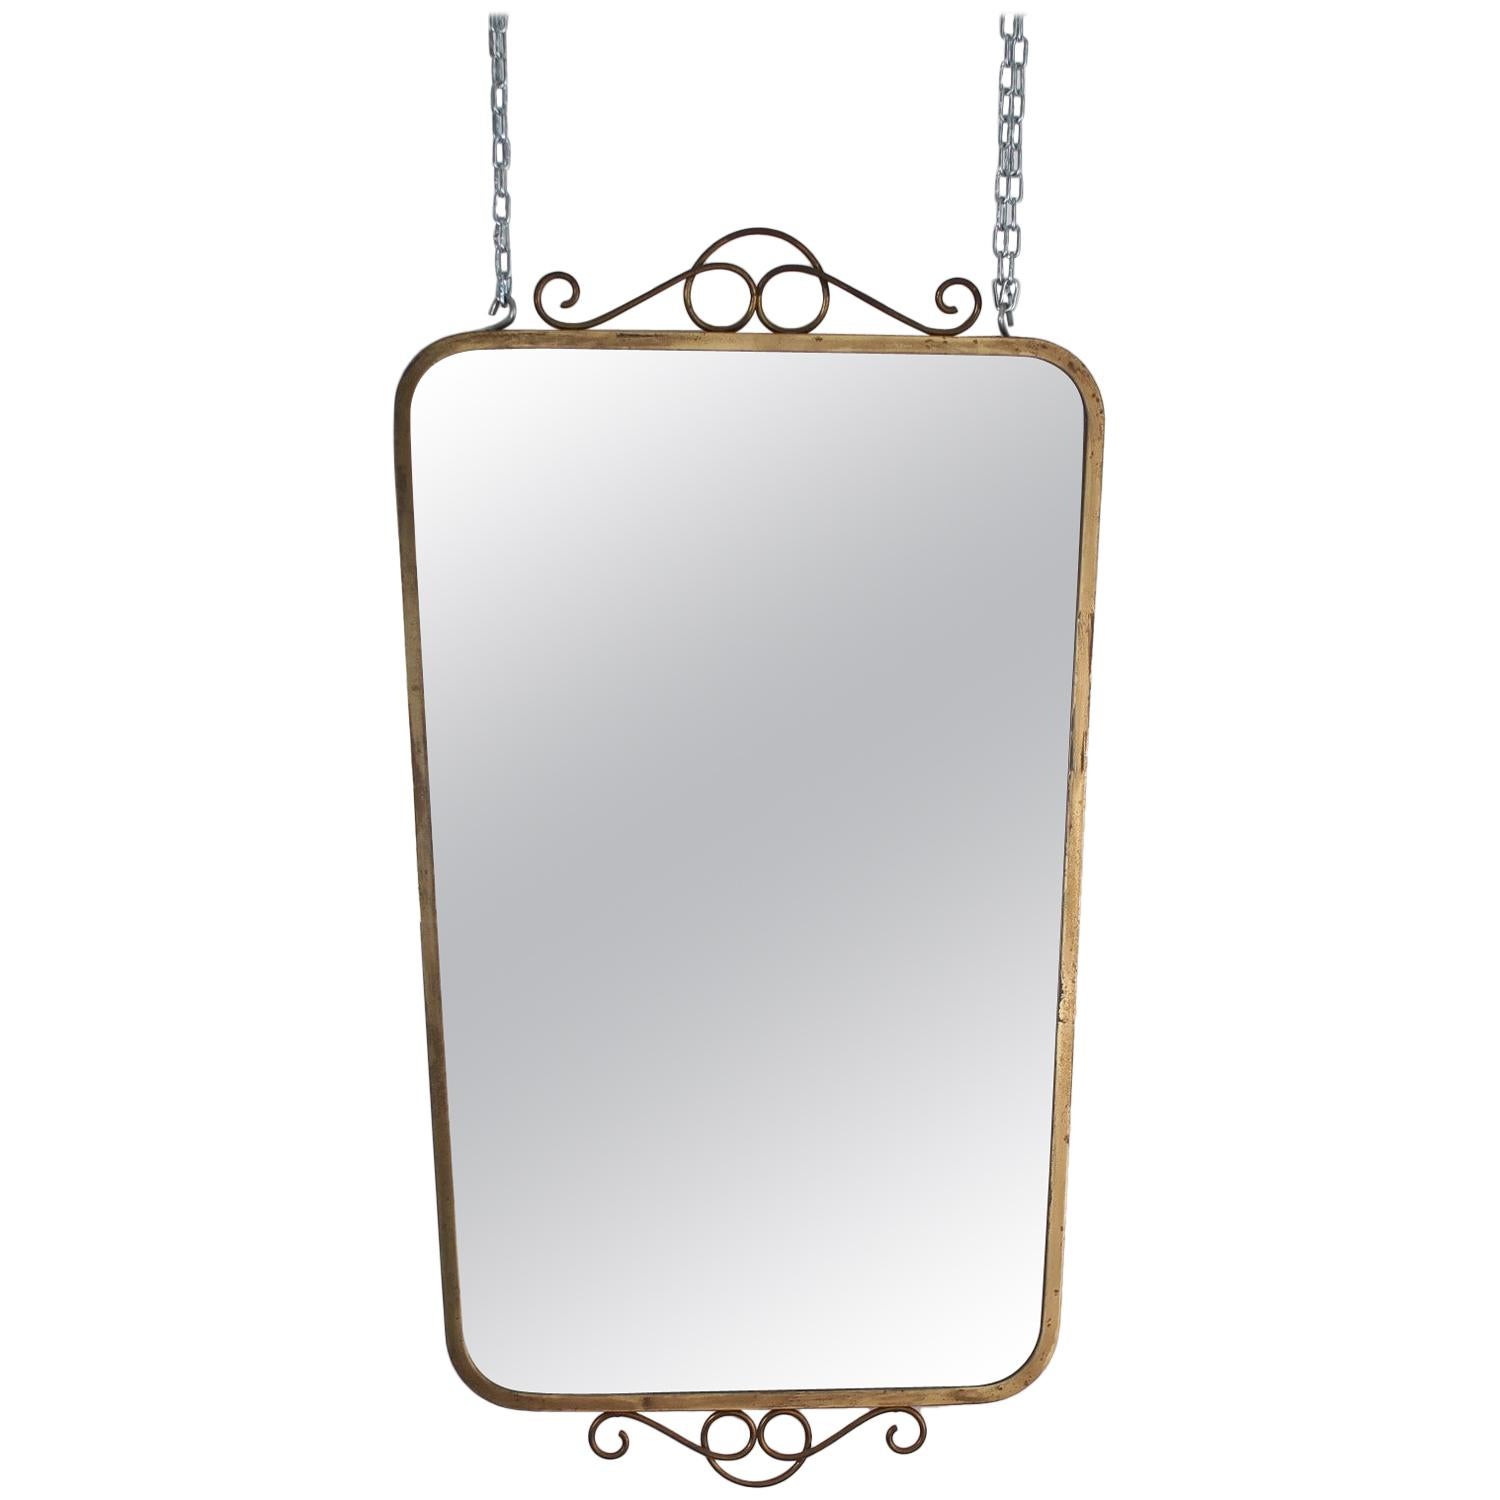 Midcentury Brass Italian Wall Mirror, 1950s